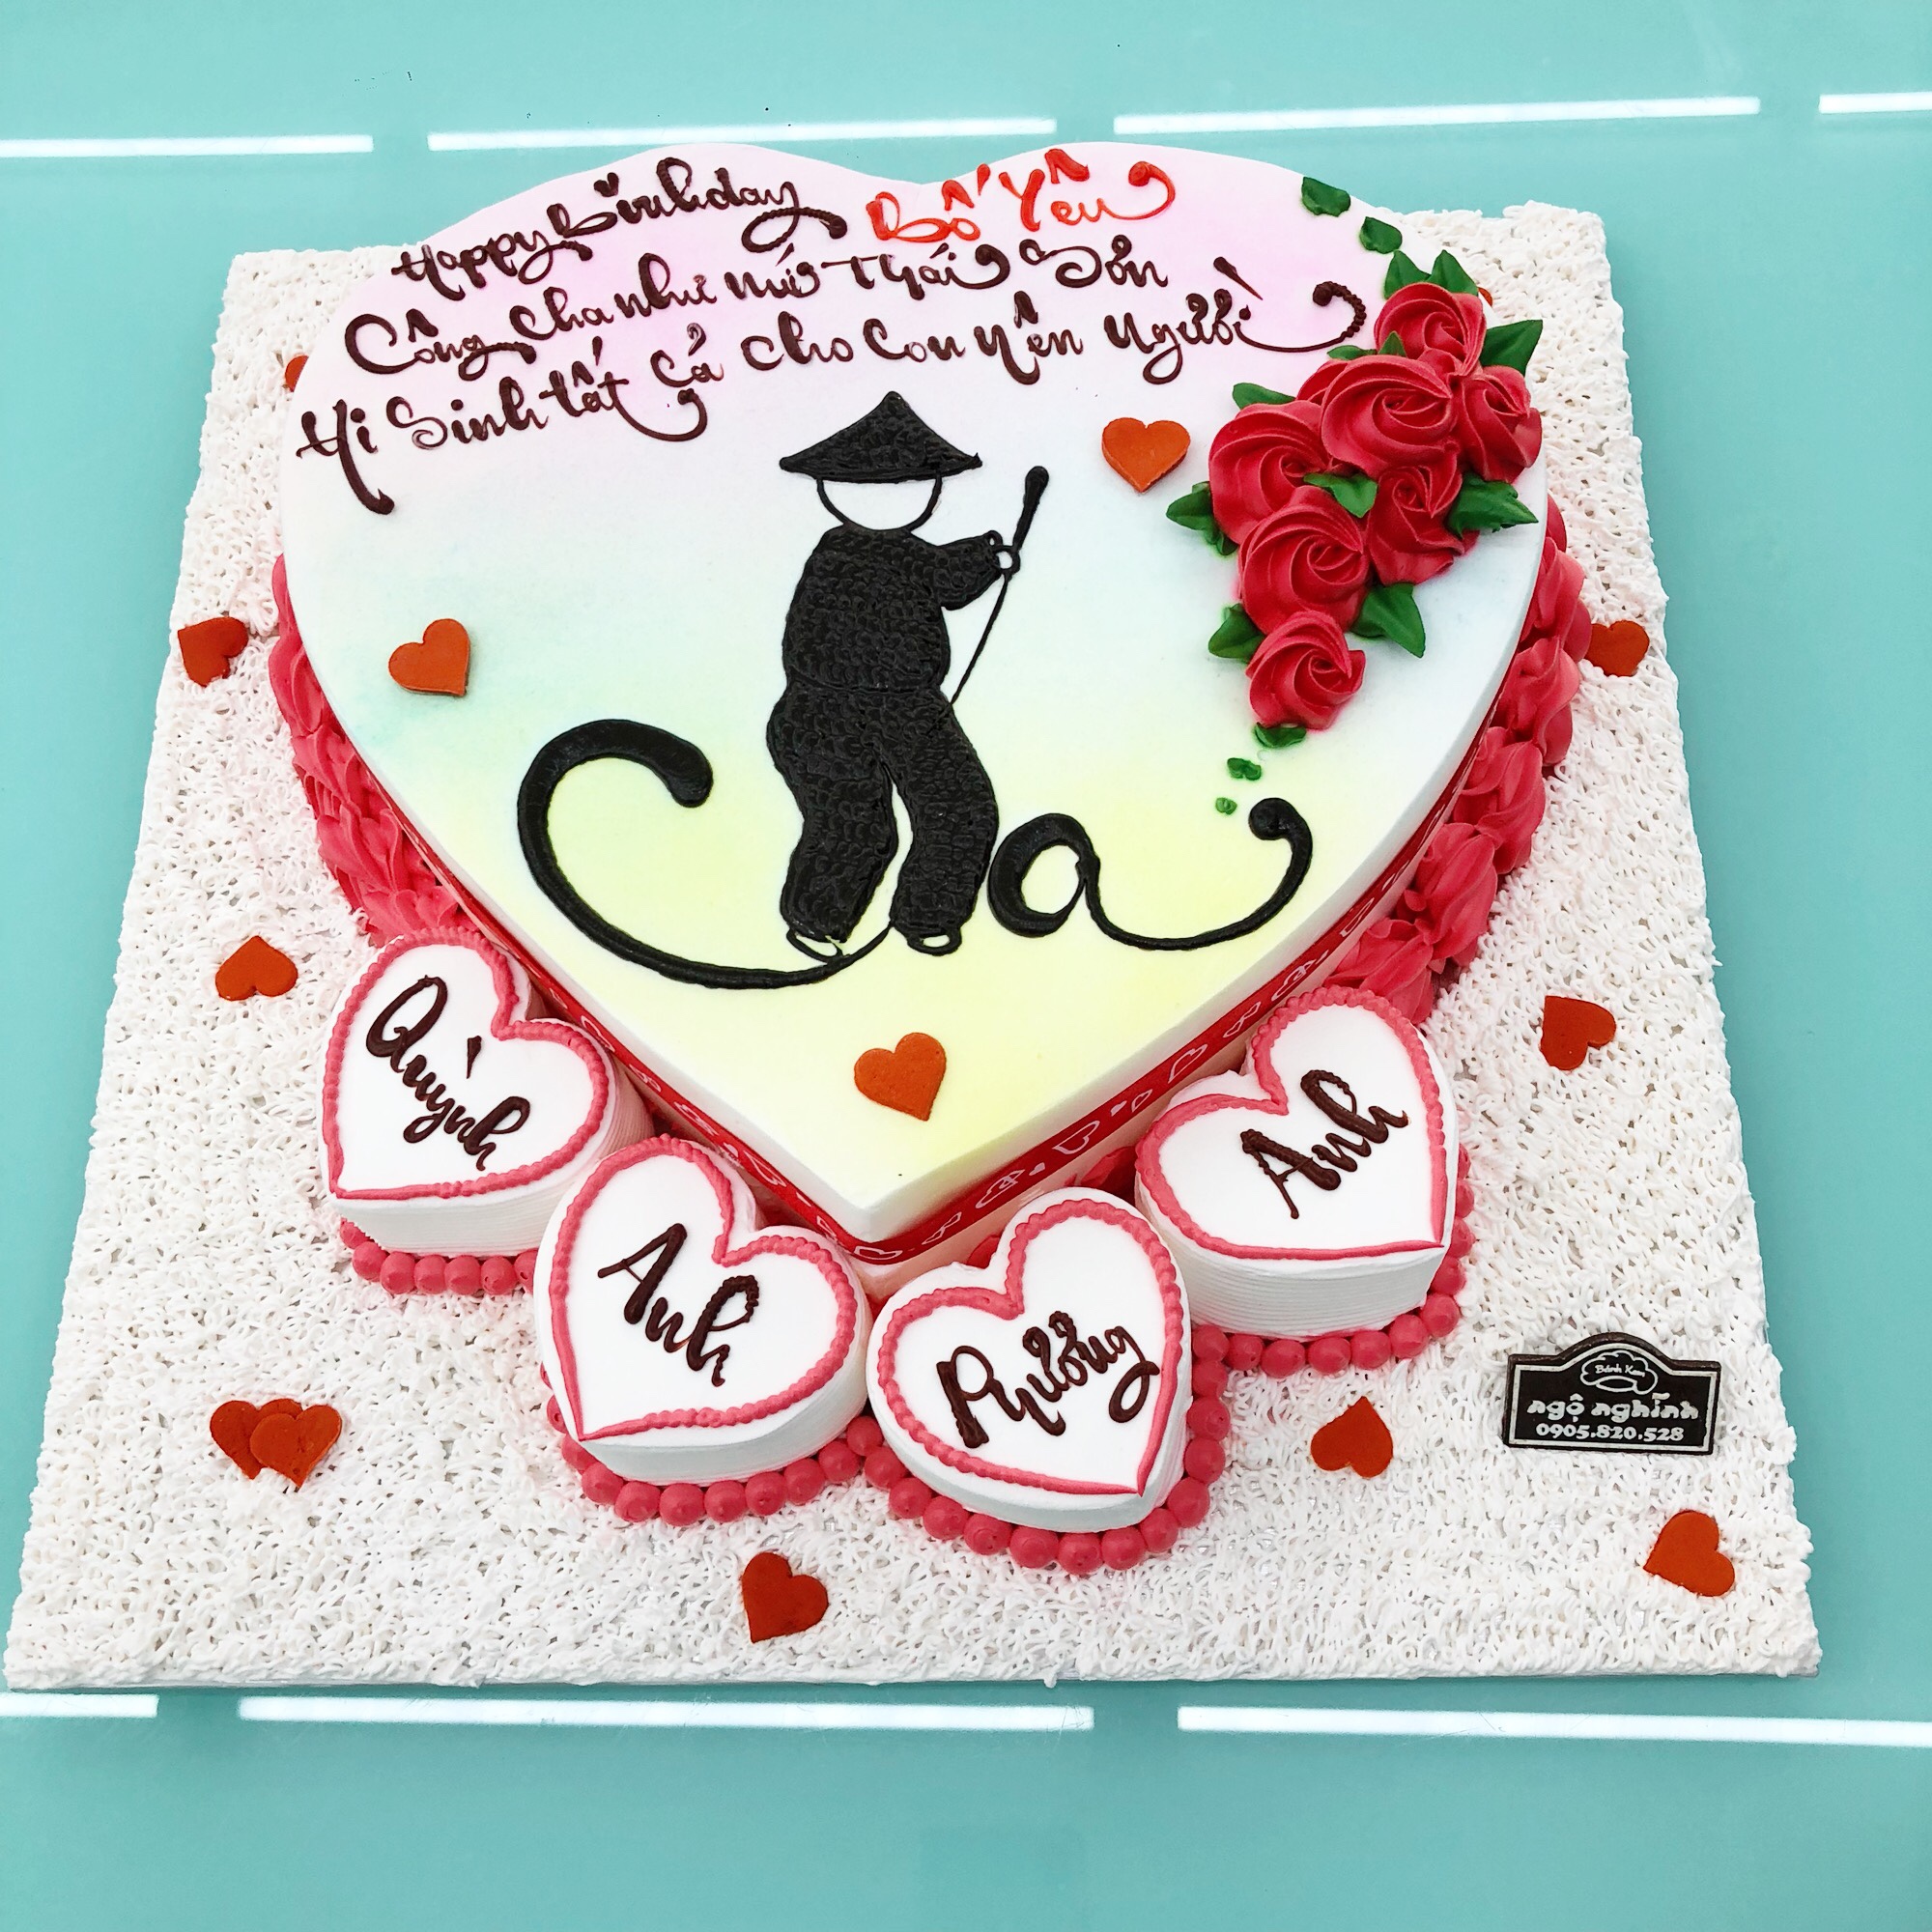 Chia sẻ với hơn 52 về mẫu bánh gato sinh nhật - Du học Akina